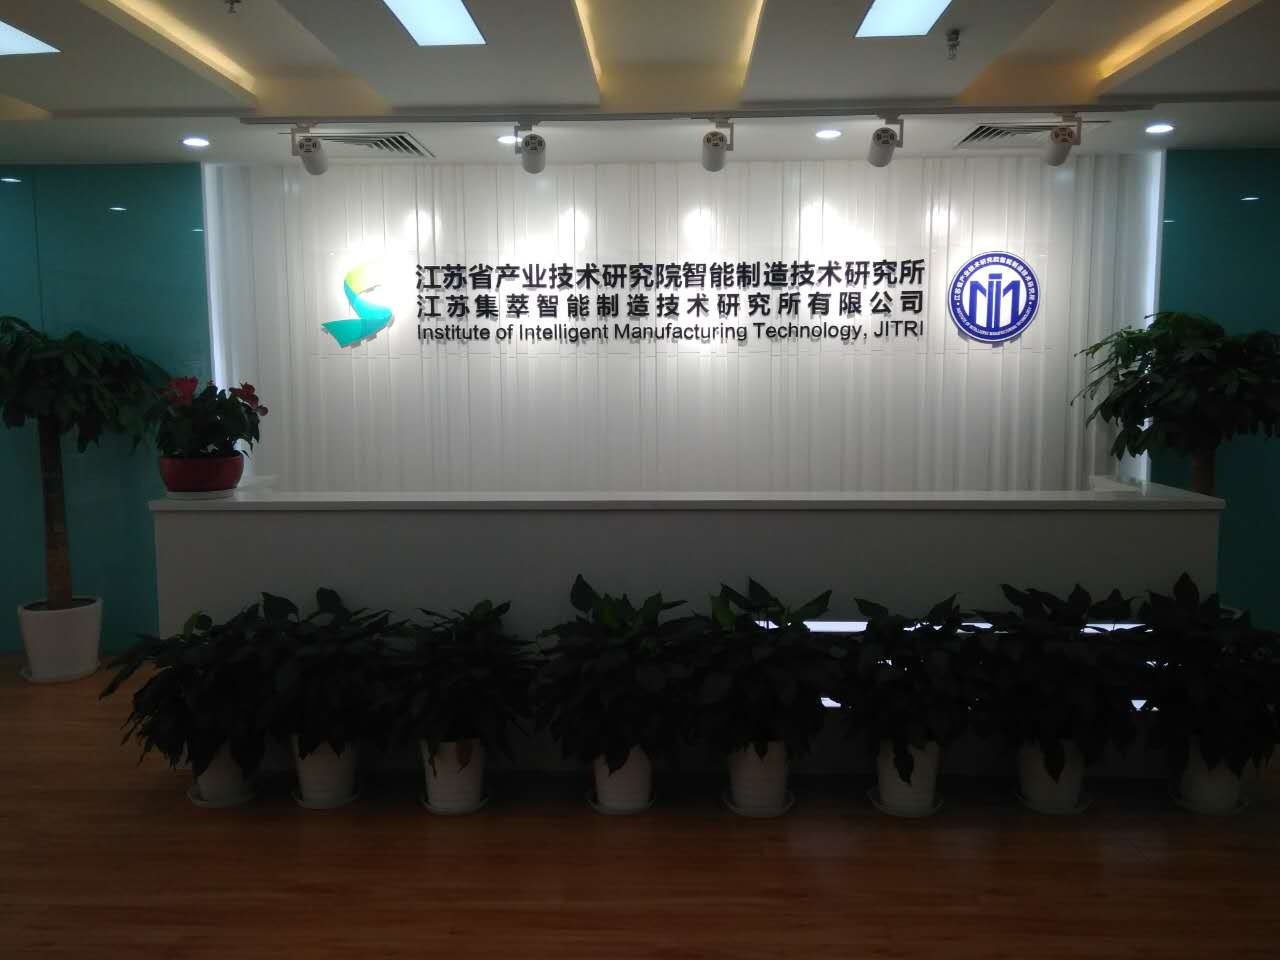 江蘇省產業技術研究院智能制造技術研究所